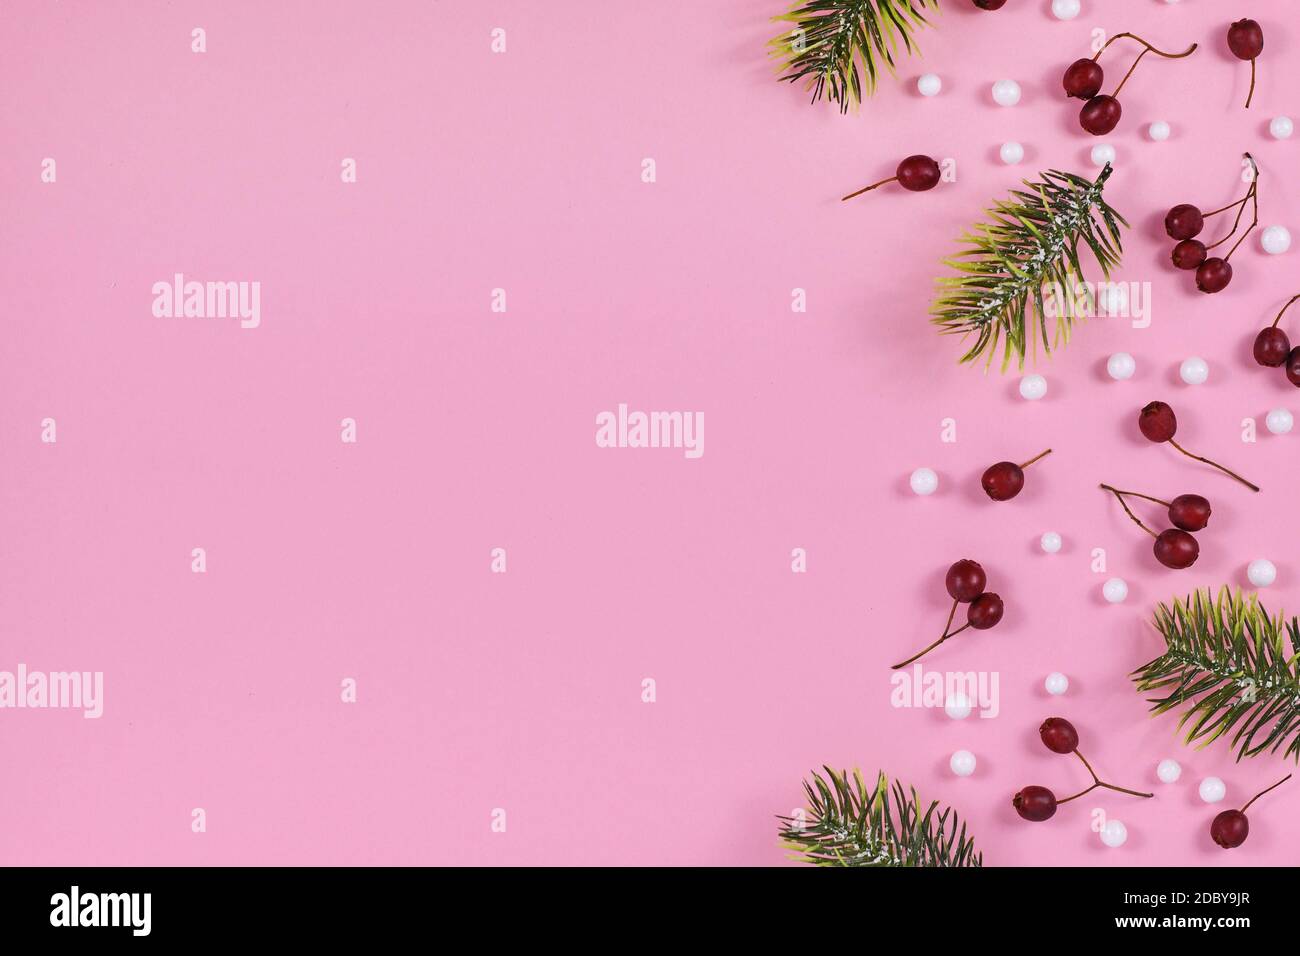 Bacche invernali rosse di stagione, palle di neve bianche e rami di abete sul lato di sfondo rosa chiaro con spazio di copia vuoto Foto Stock